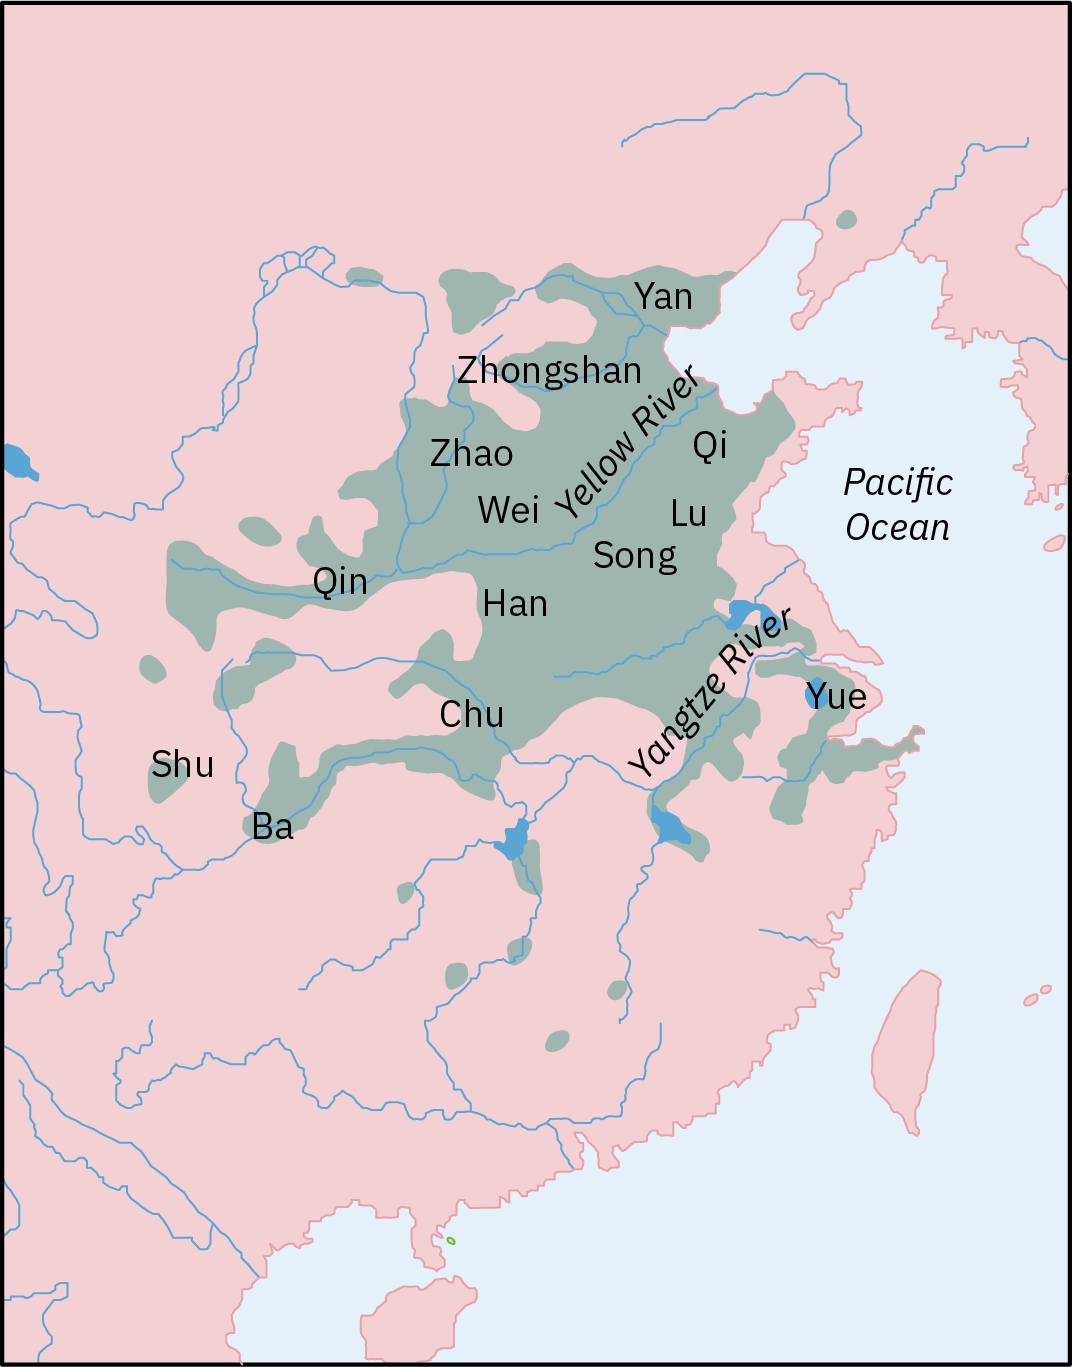 中国古代（约公元前 475-221 年）战国时期的地图显示了存在社会动荡和不和谐的中国部分地区。